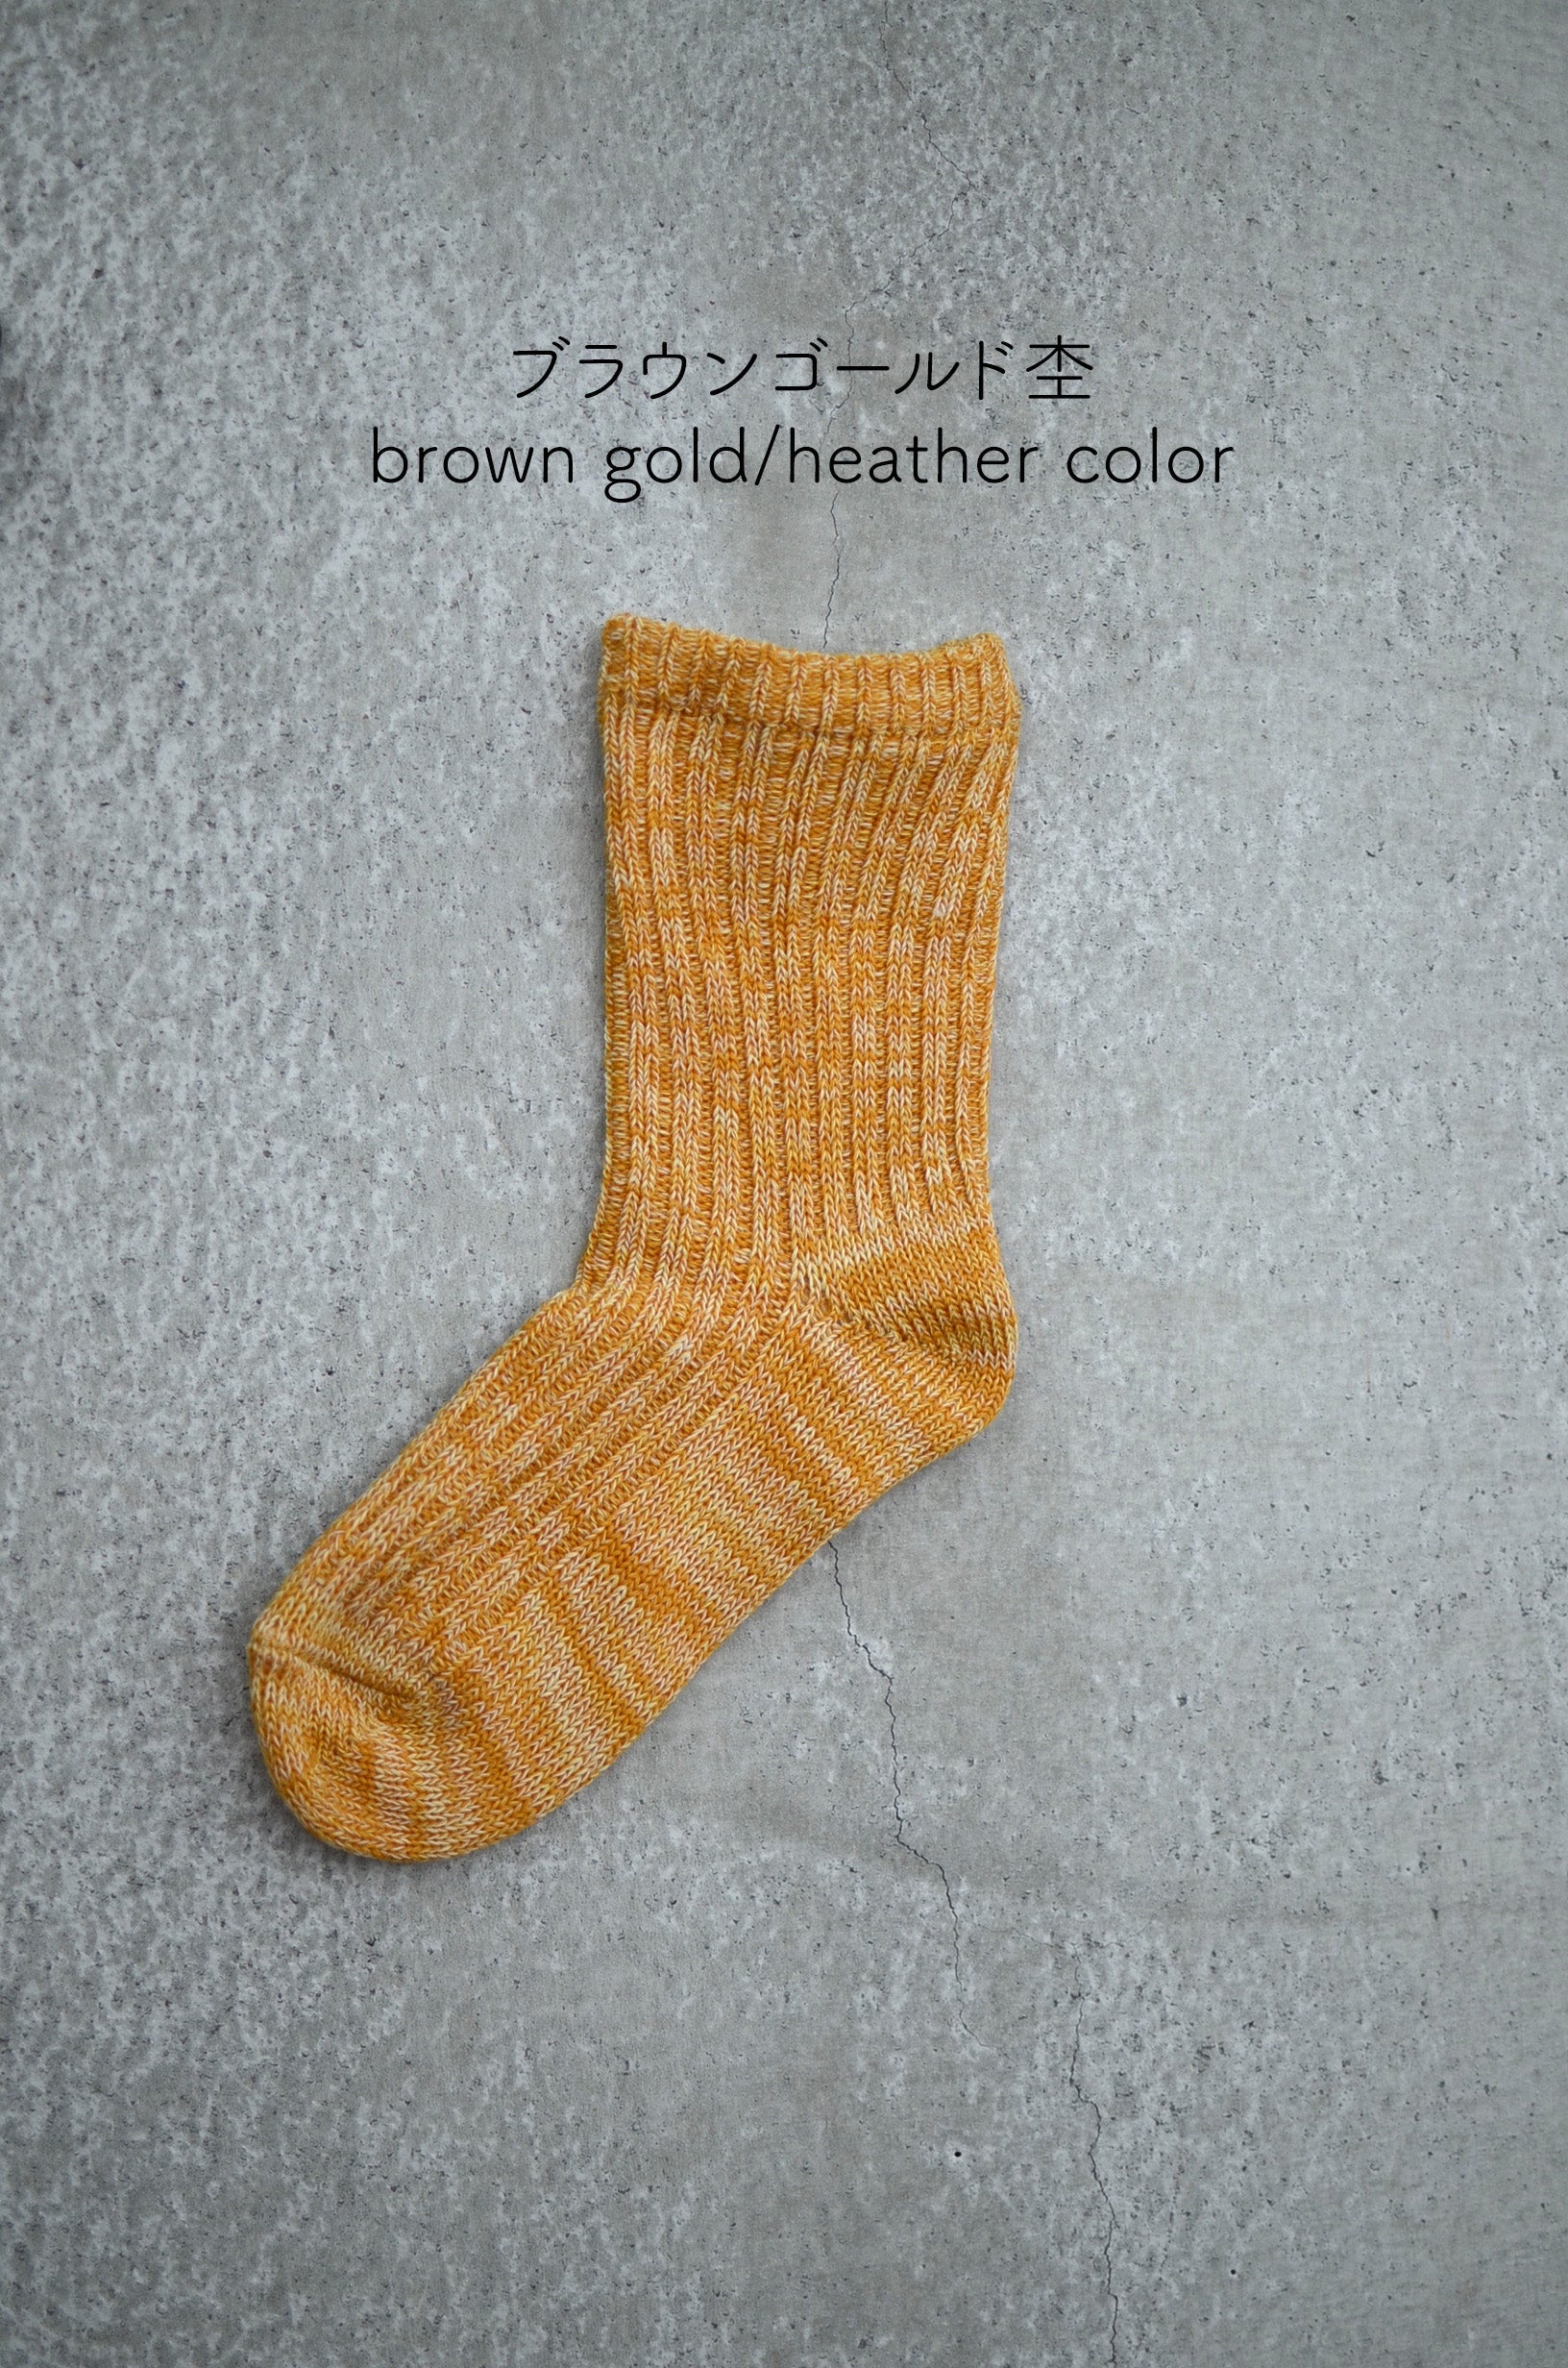 靴下 ソックス 6色組み合わせ ソックスレディース 靴下レディース